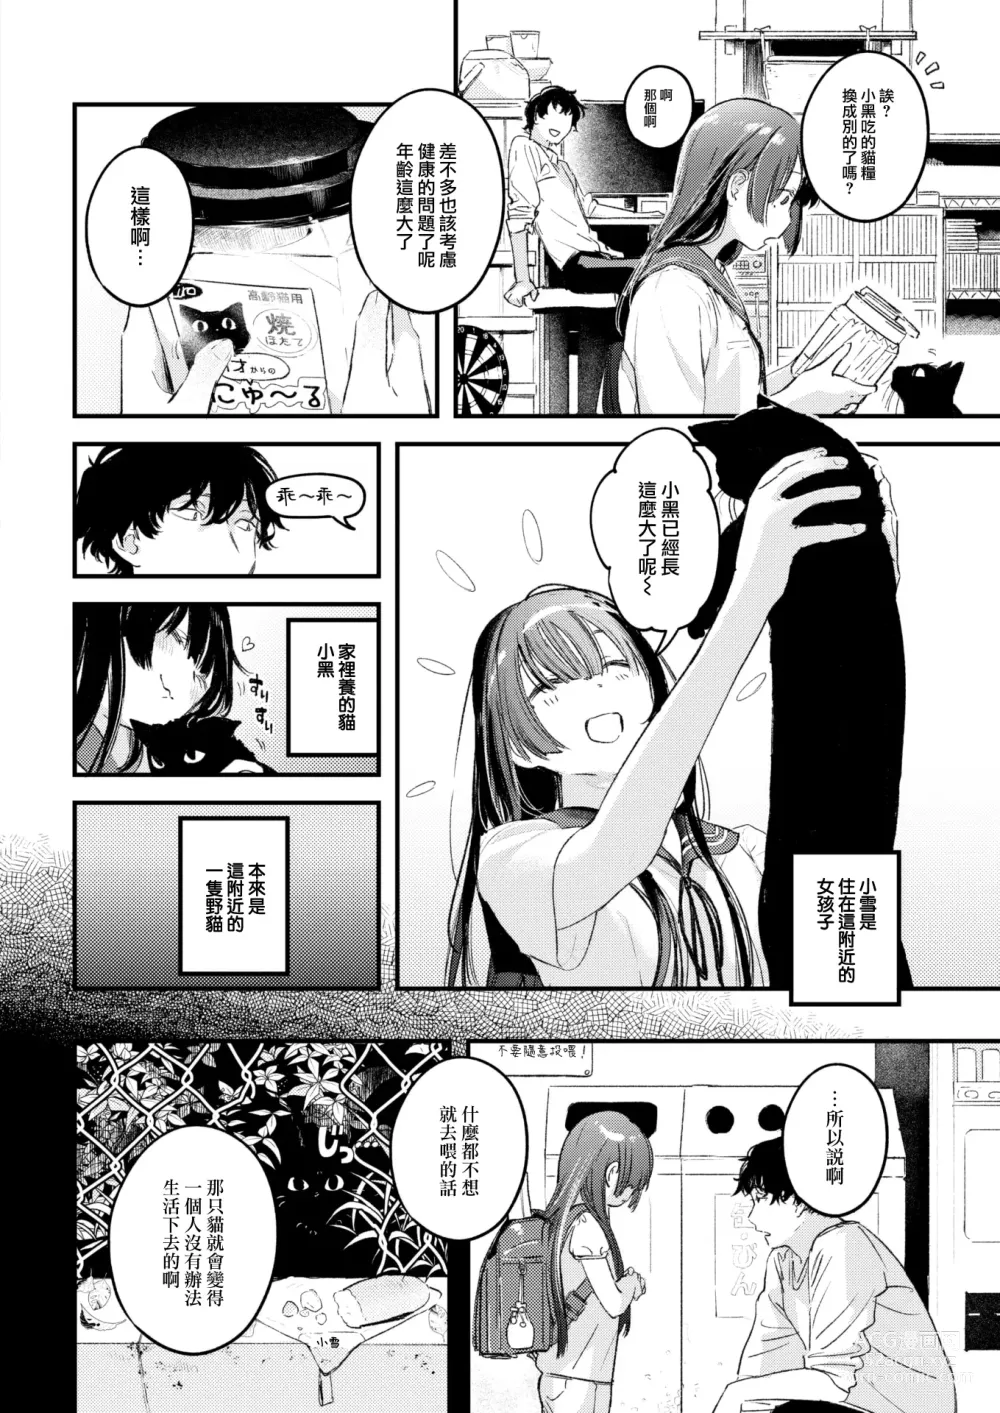 Page 9 of manga Koi no Mukidashi